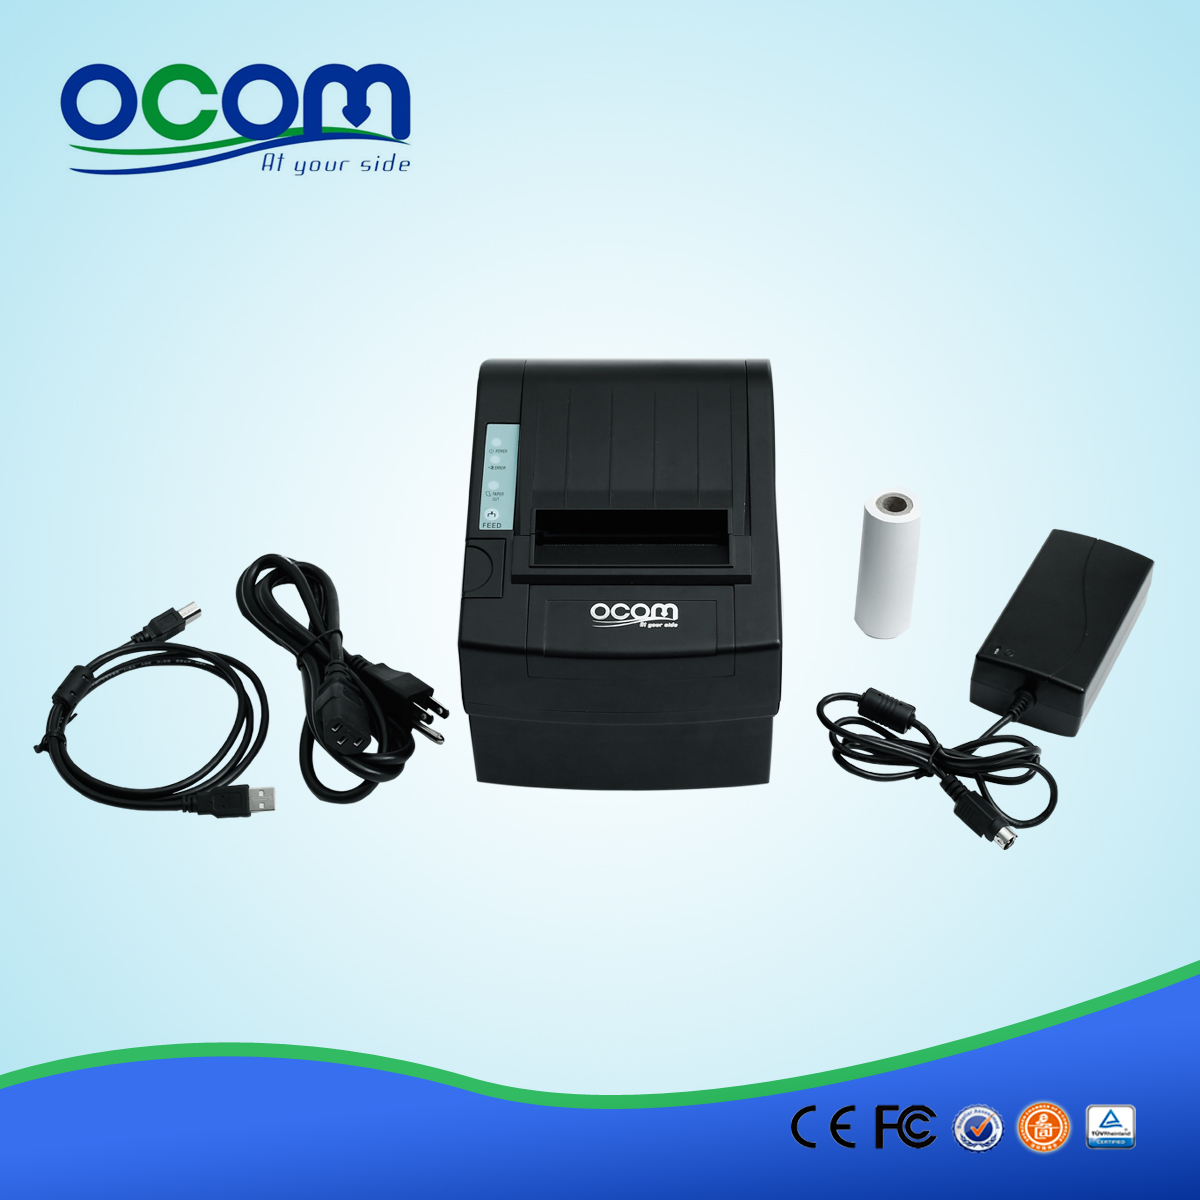 Chine haute qualité POS sans fil WIFI réception imprimante-OCPP-806-W